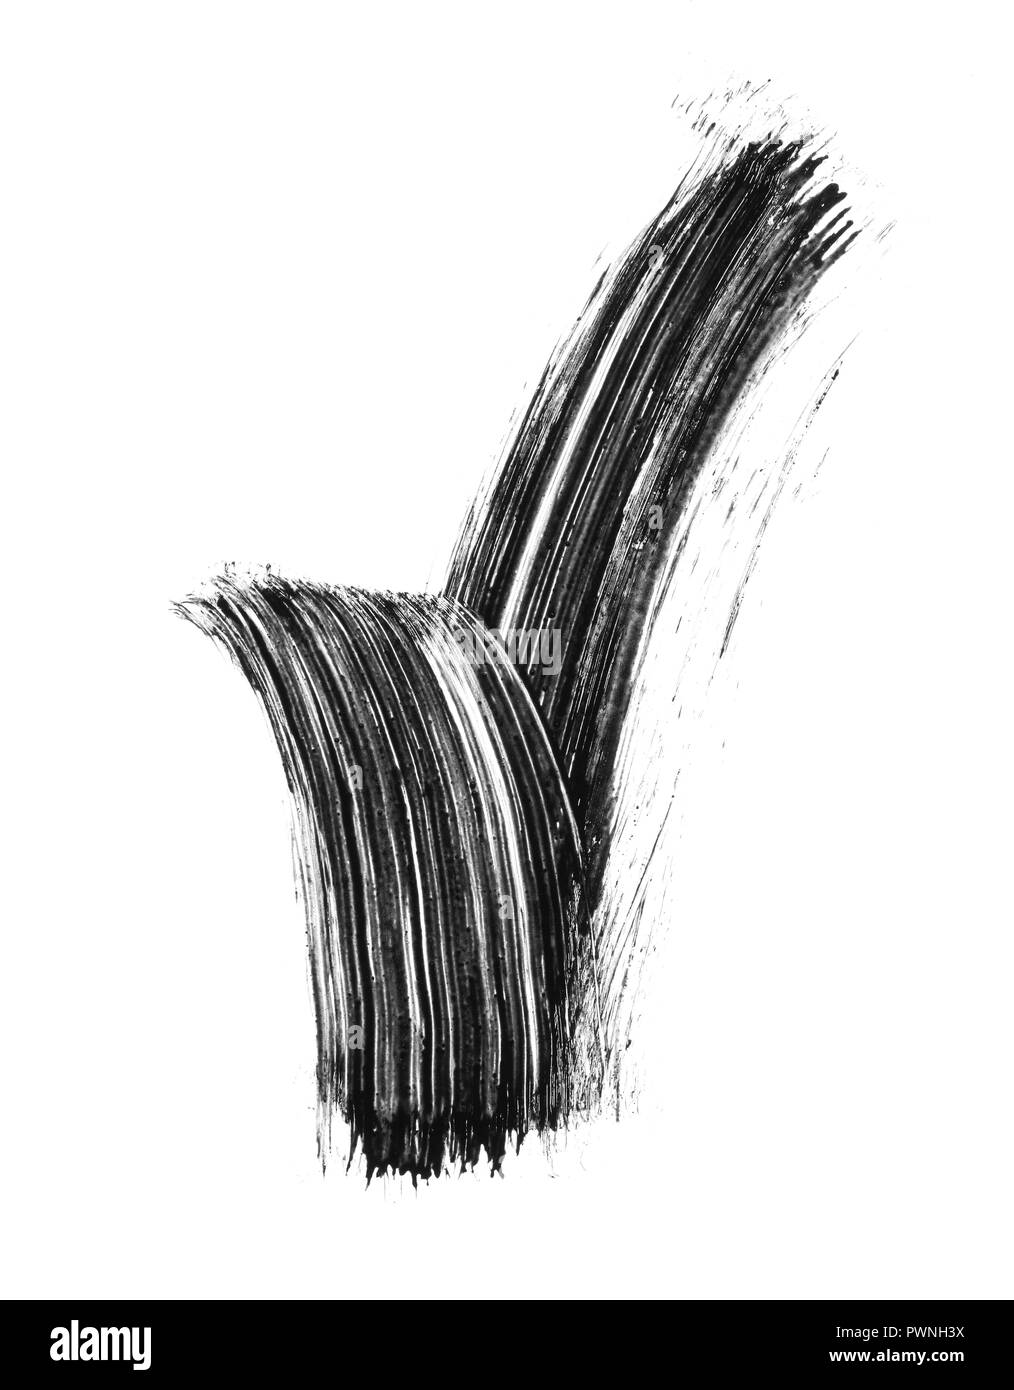 Textur der schwarze Wimperntusche für Wimpern auf weißem Hintergrund. Abstrich der schwarze Wimperntusche für Wimpern auf weißem Hintergrund. Stockfoto